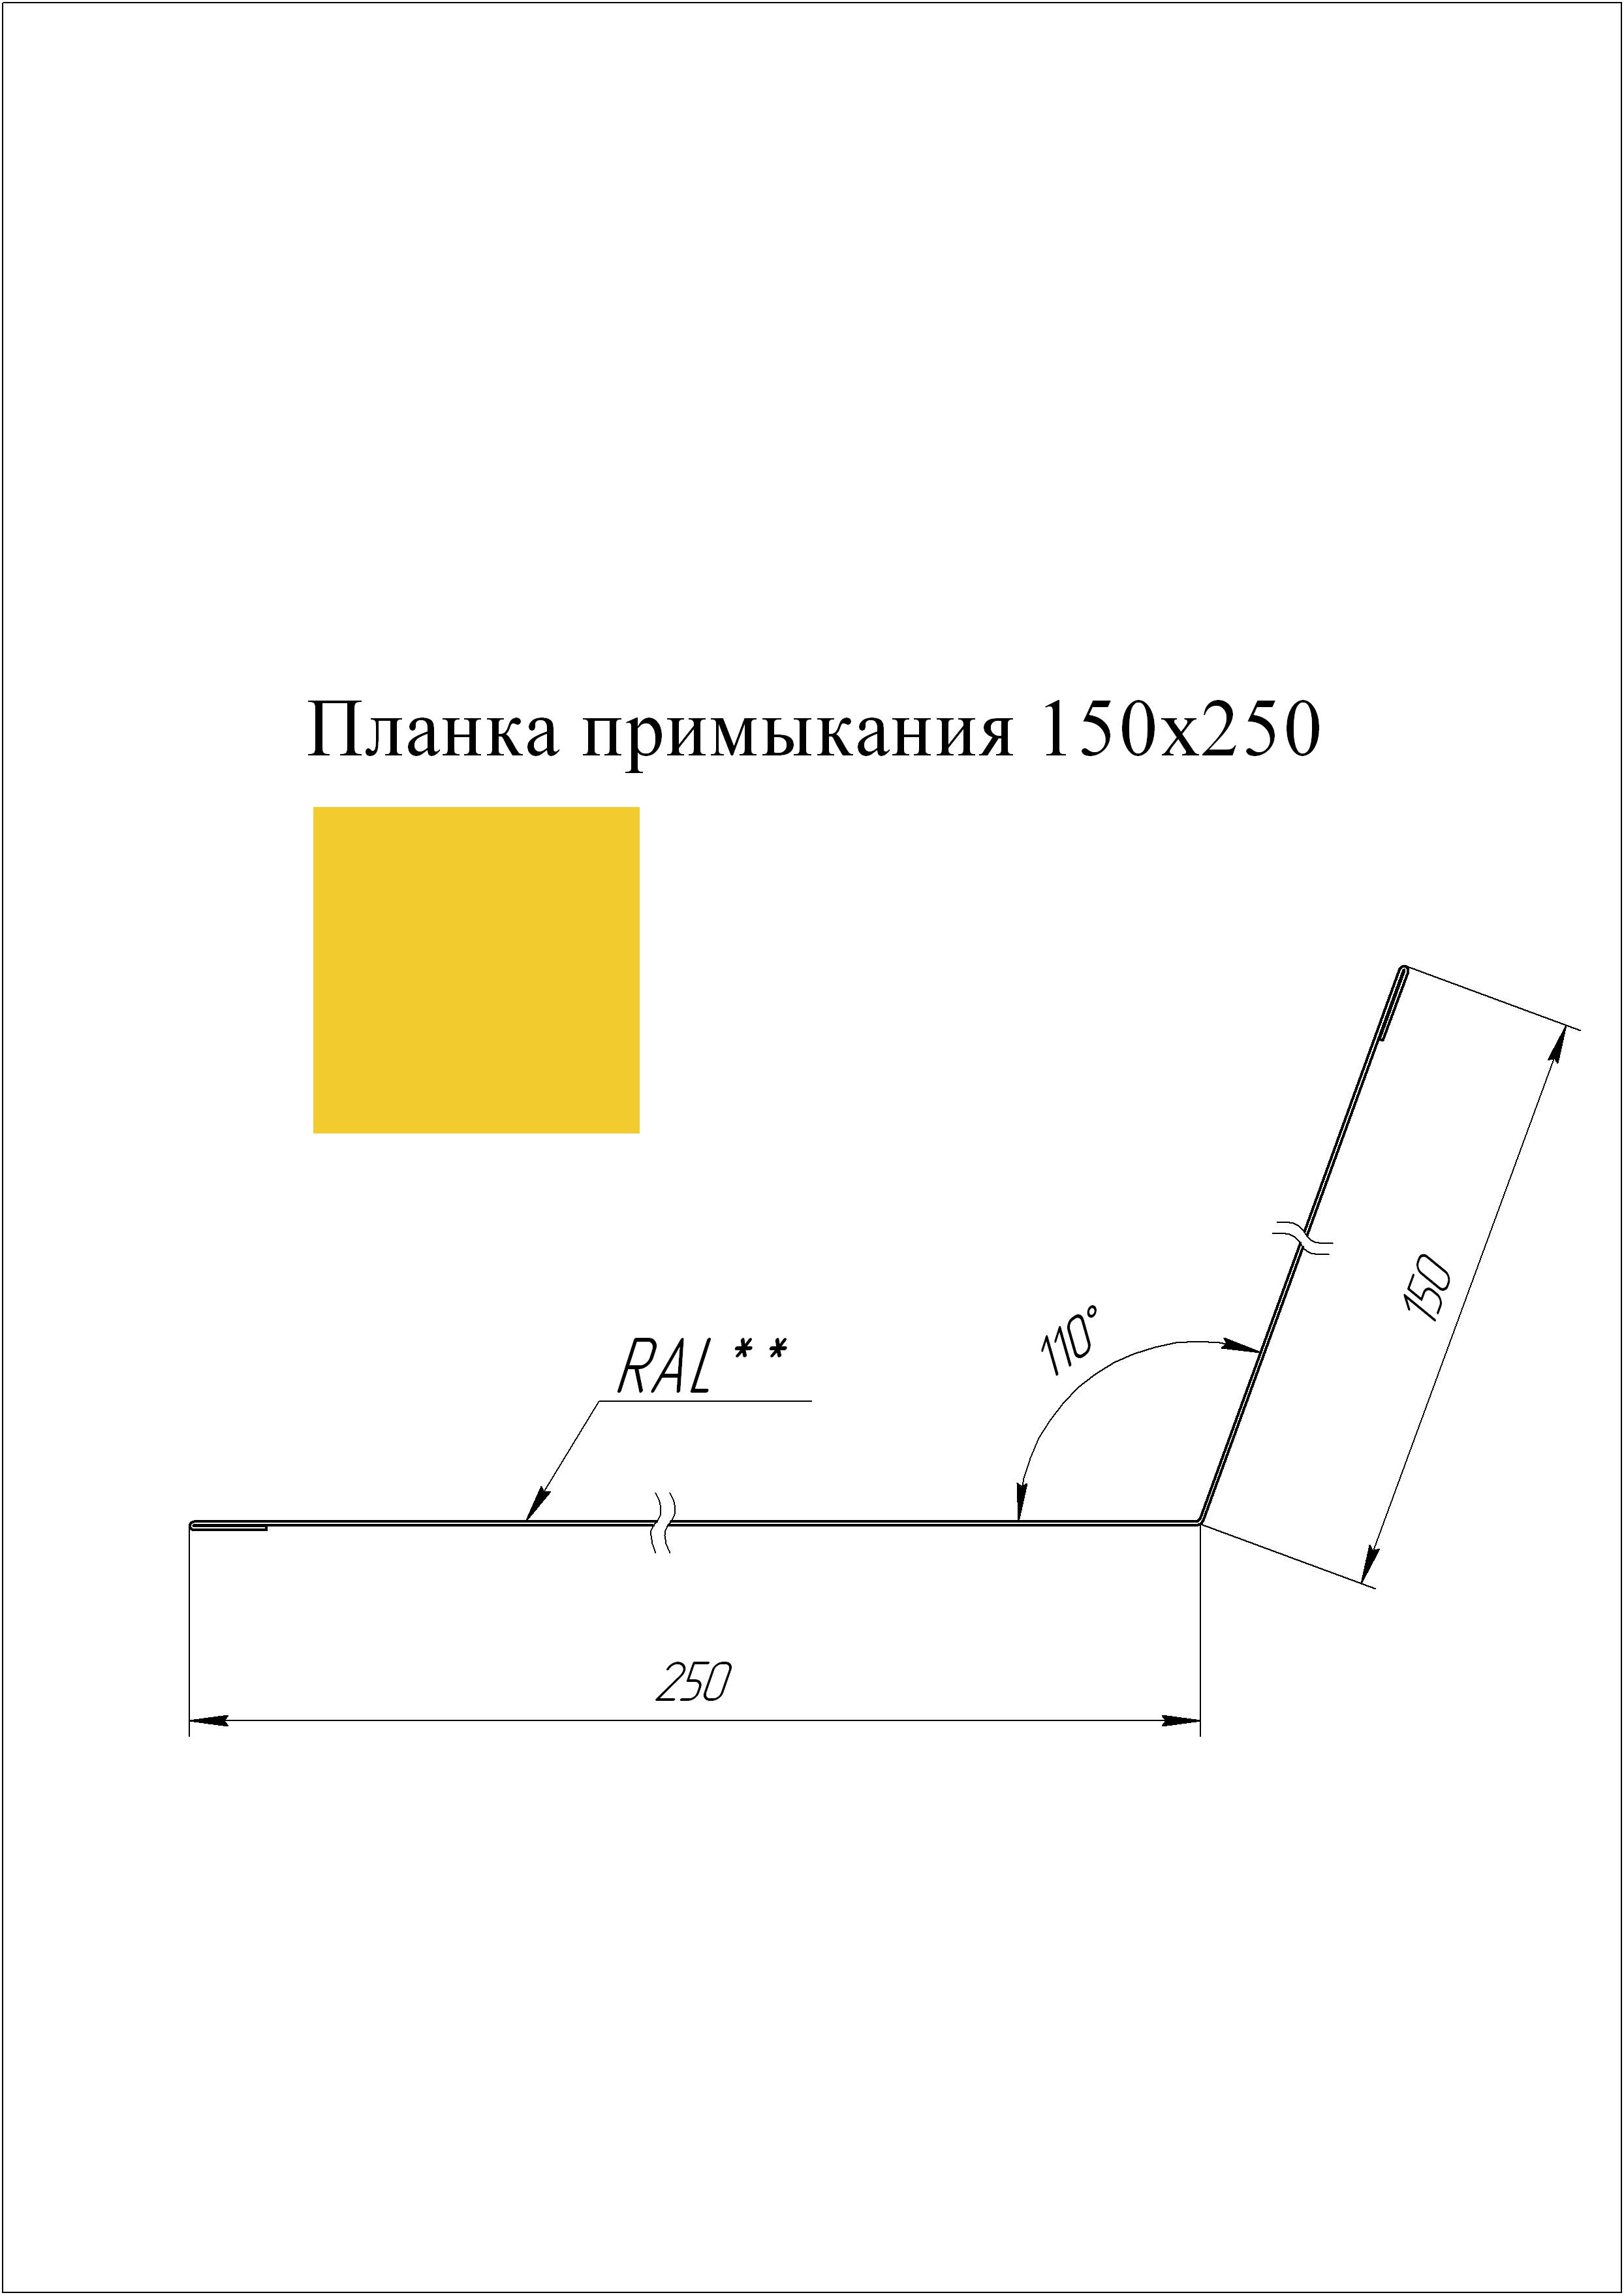 Планка примыкания 150*250 мм L=2 м GL PE-полиэстер 0,45 RAL 1018 - желтый цинк